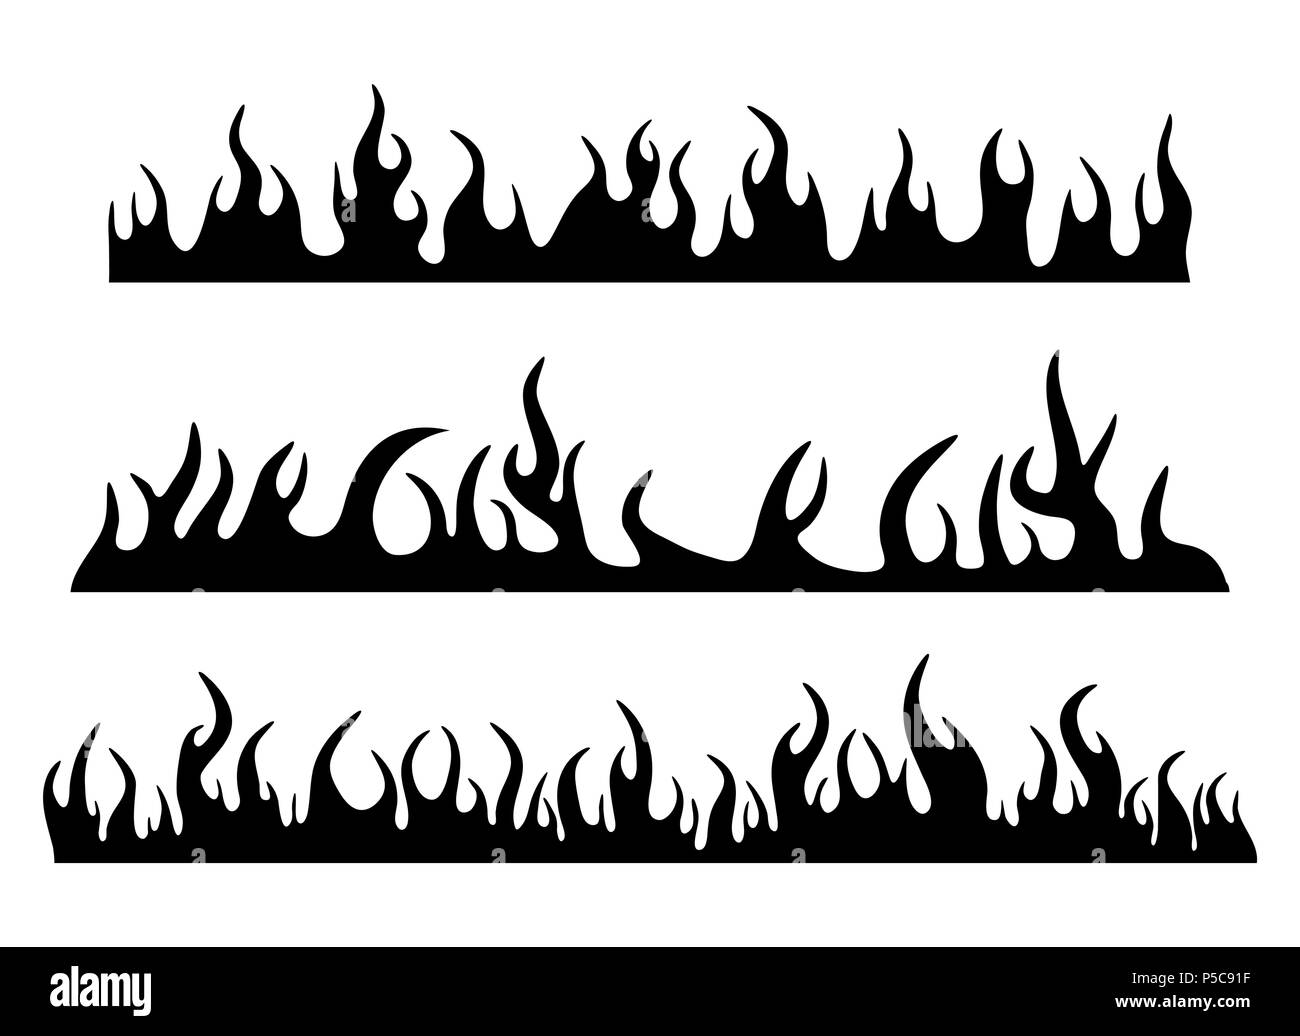 Feu flamme brûlant ensemble silhouette conception horizontale bannière isolated on white Illustration de Vecteur